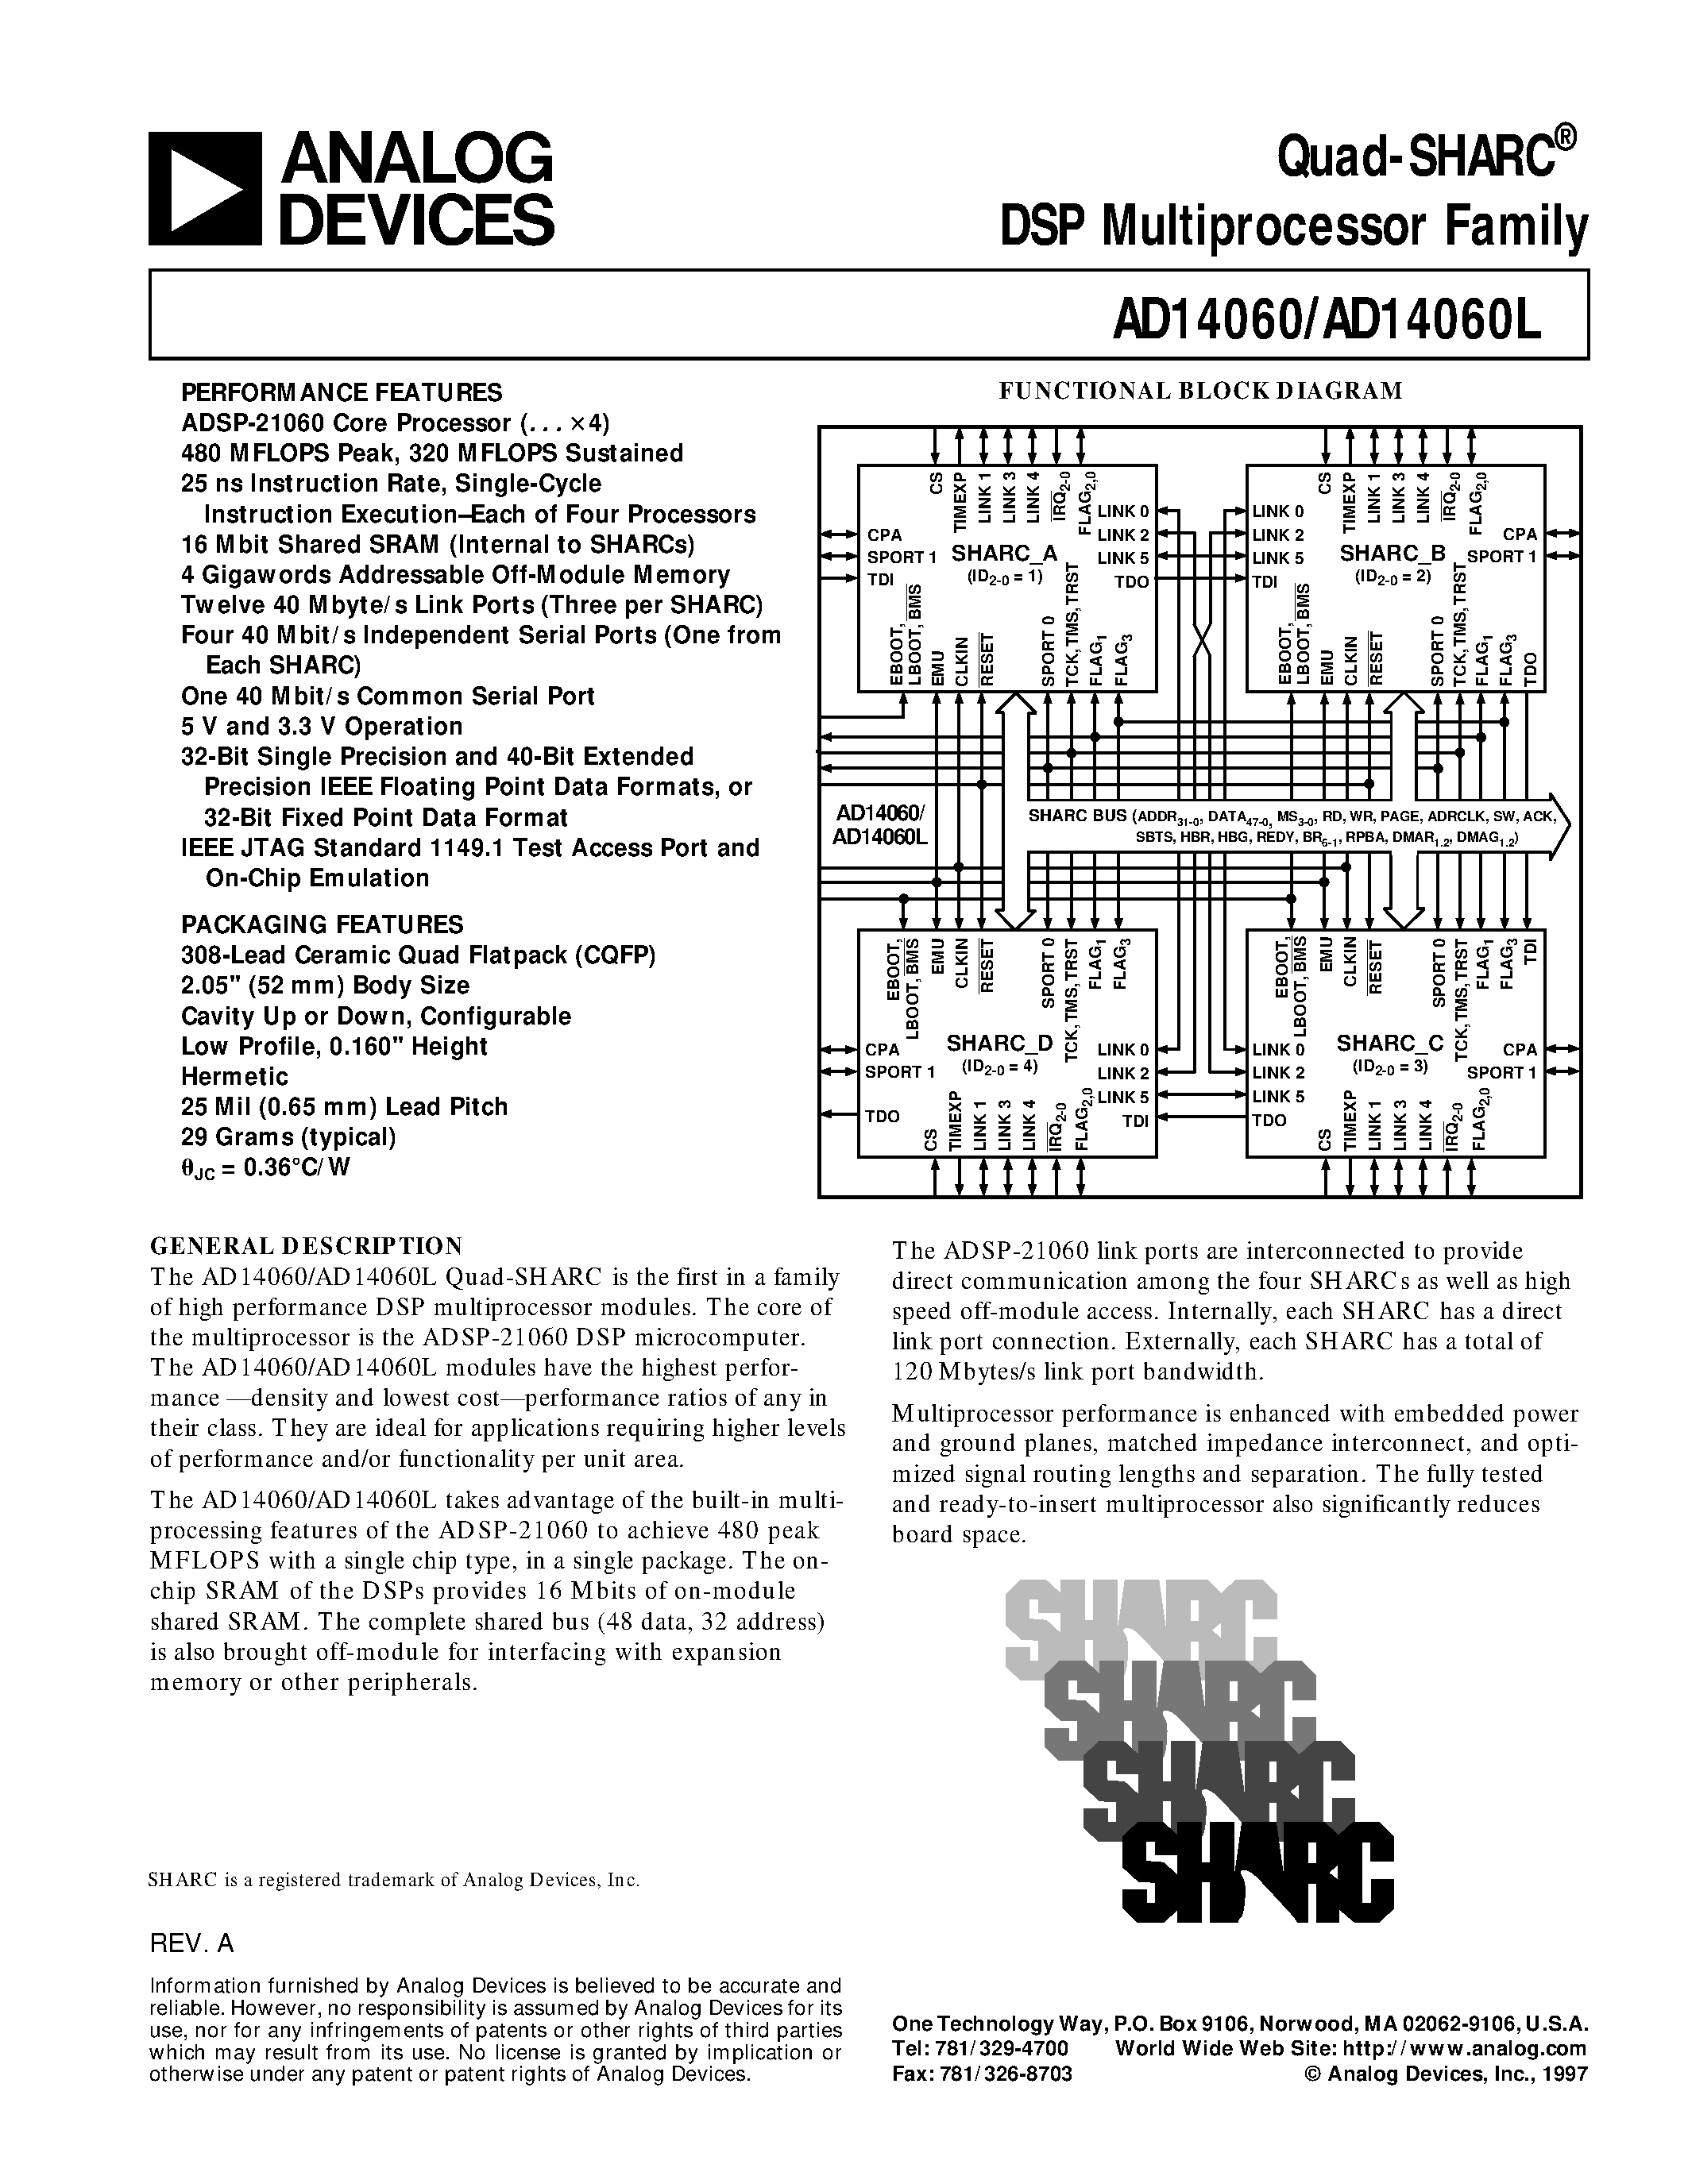 Даташит AD14060LBF-4 - Quad-SHARC DSP Multiprocessor Family страница 1